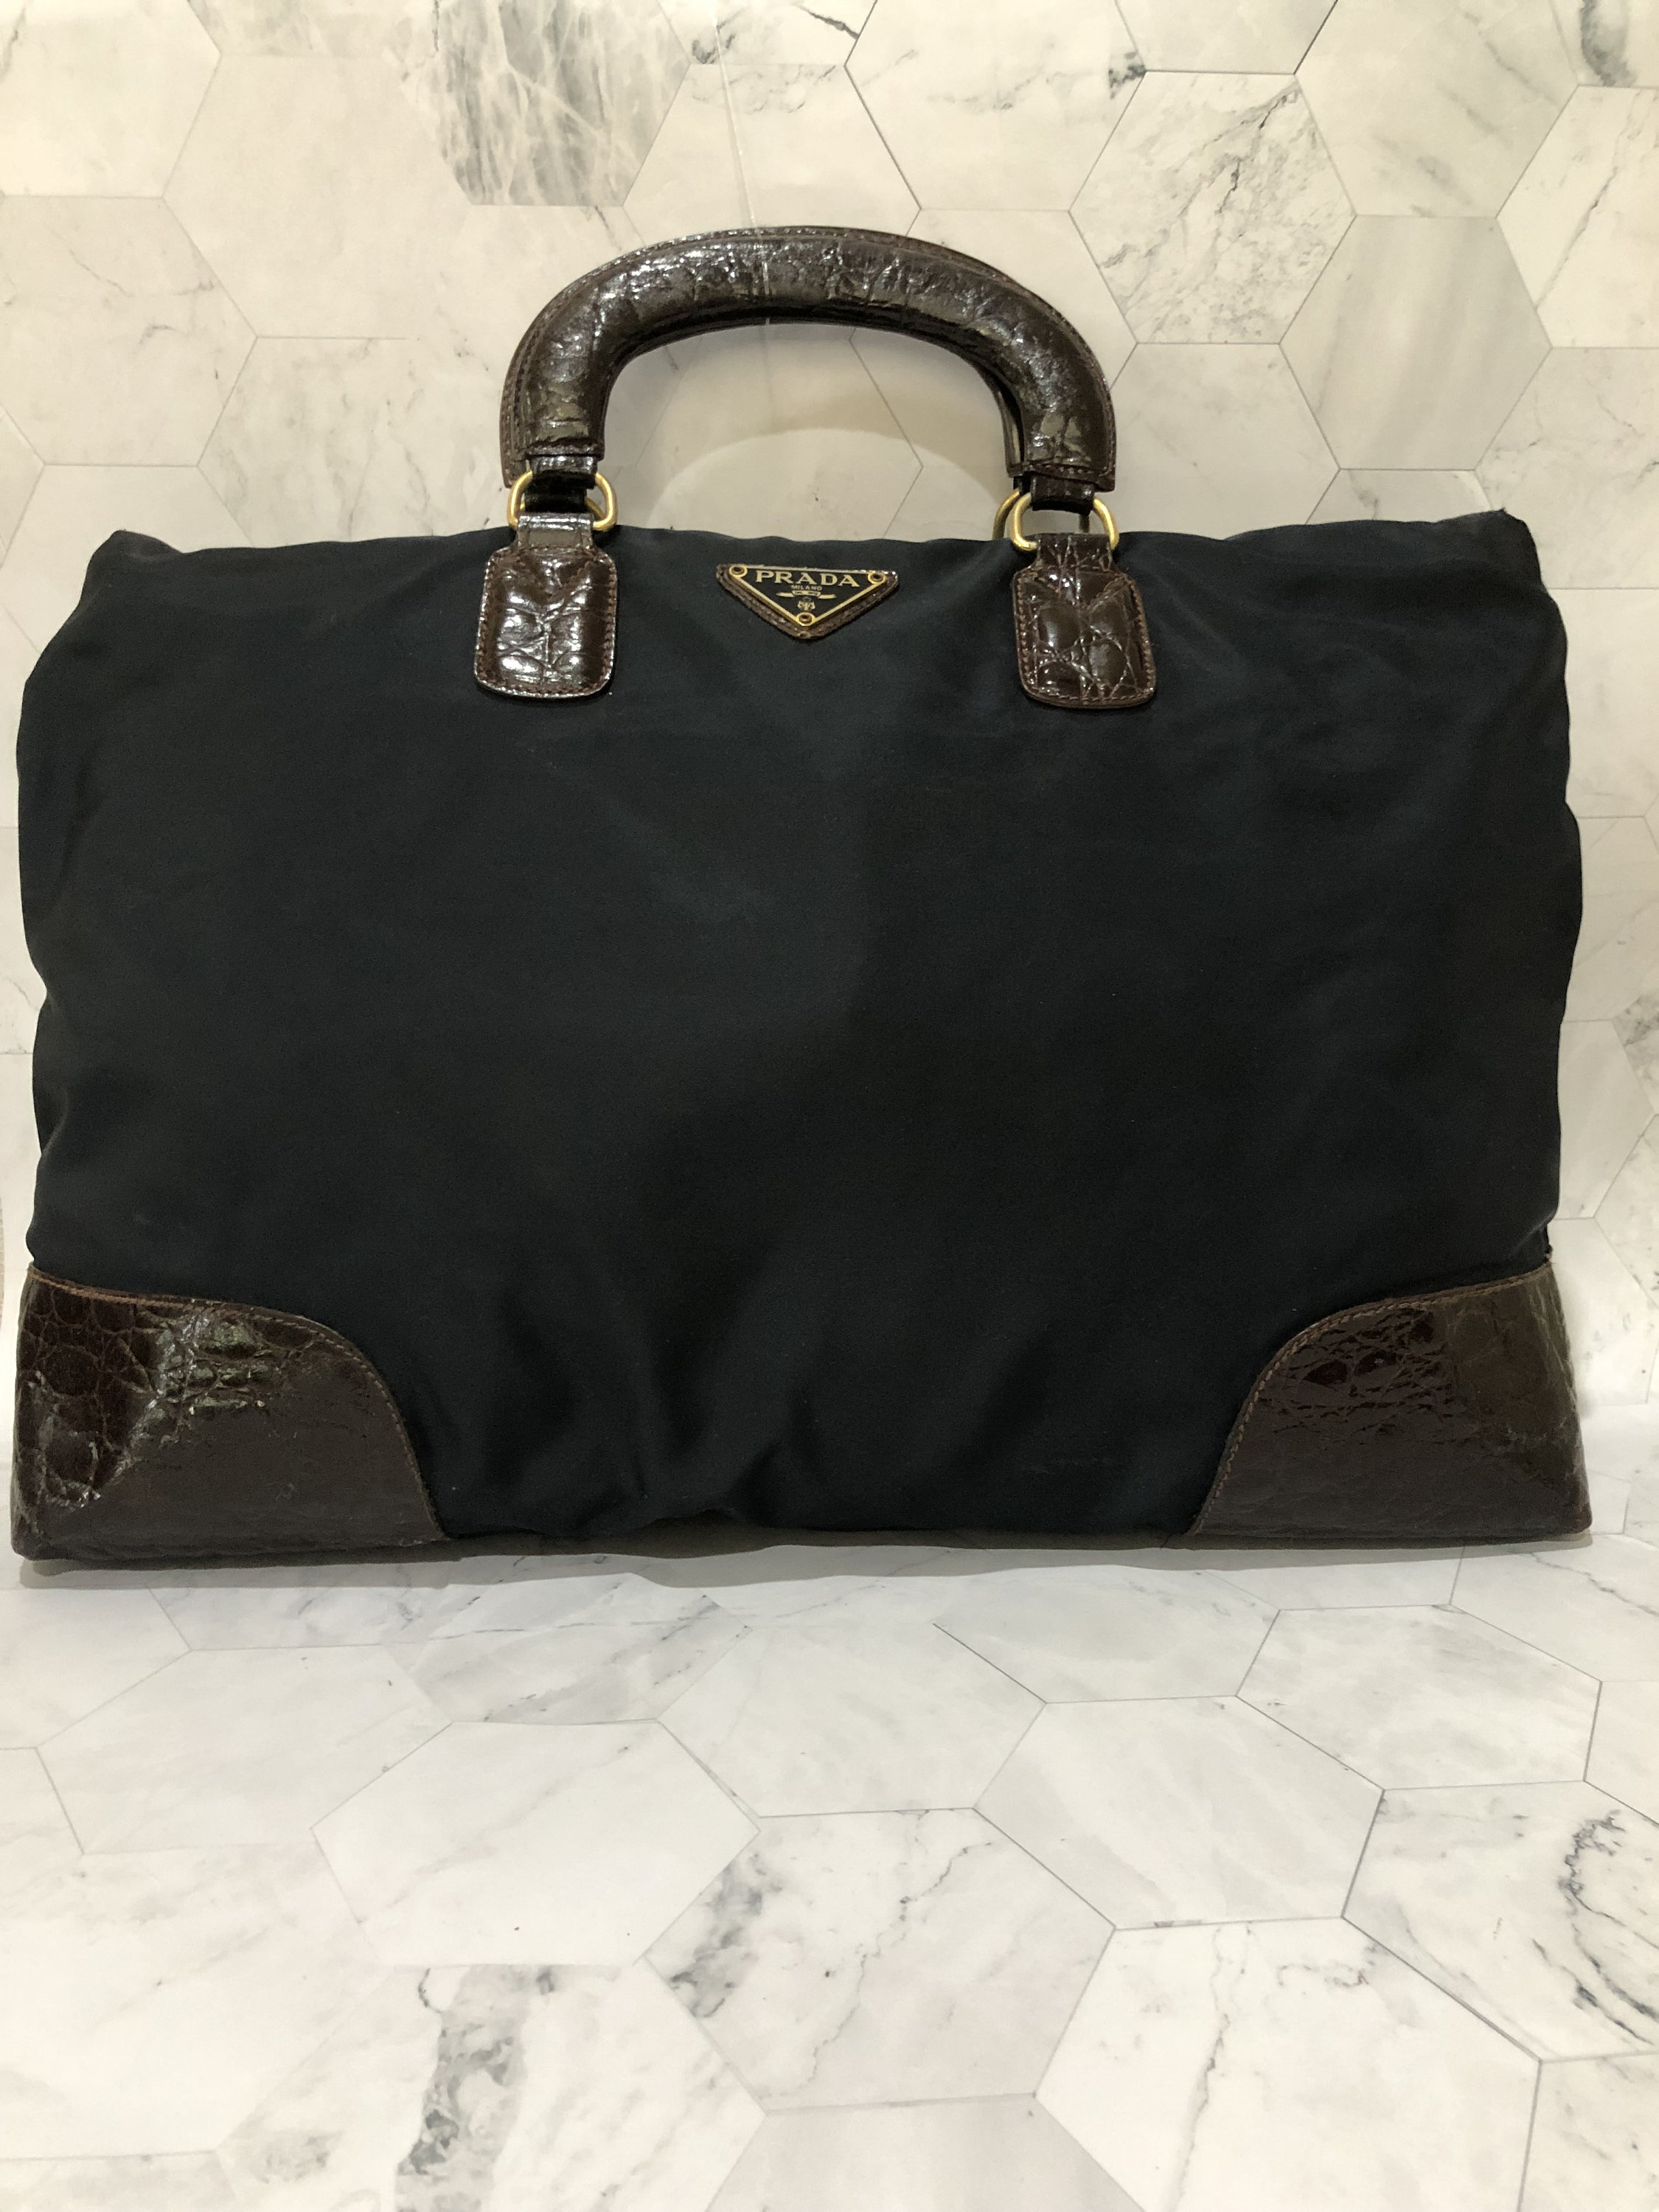 PRADA Saffiano Pochette Crossbody Mini Shoulder Bag Handbag 2 way bag